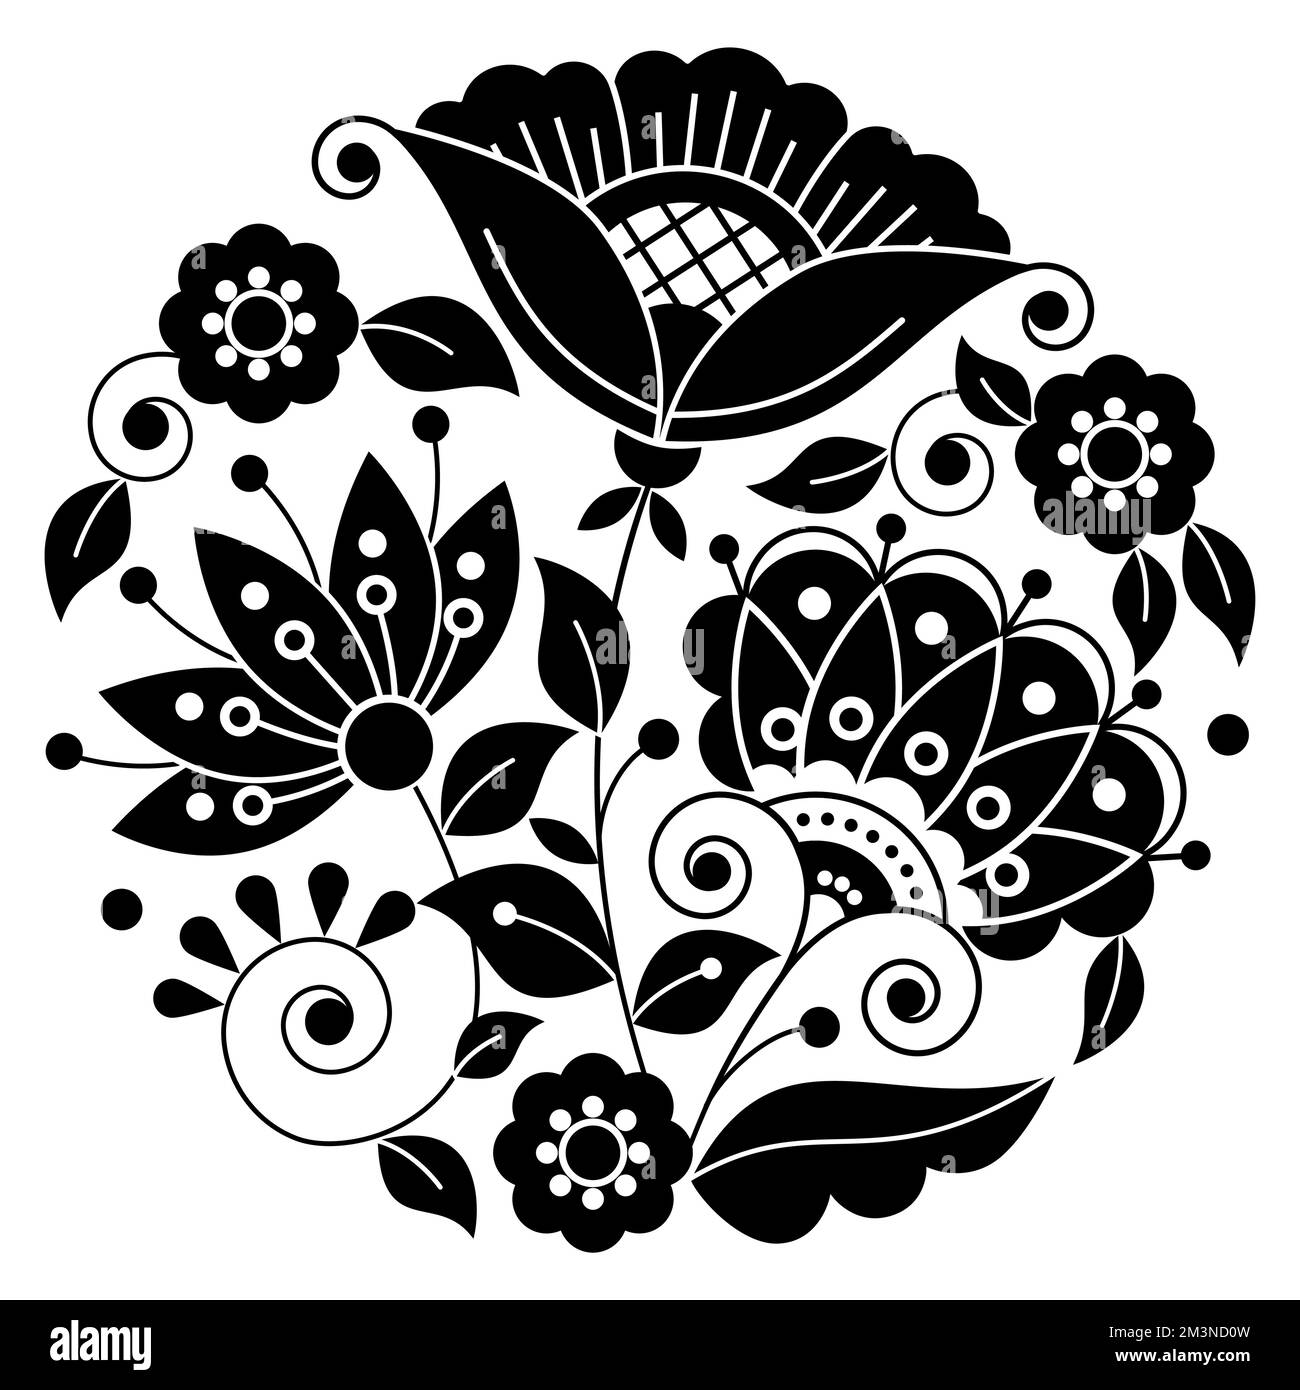 Motif mandala vectoriel d'art populaire suédois avec fleurs, feuilles et tourbillons noirs et blancs inspirés de la broderie traditionnelle scandinave Illustration de Vecteur